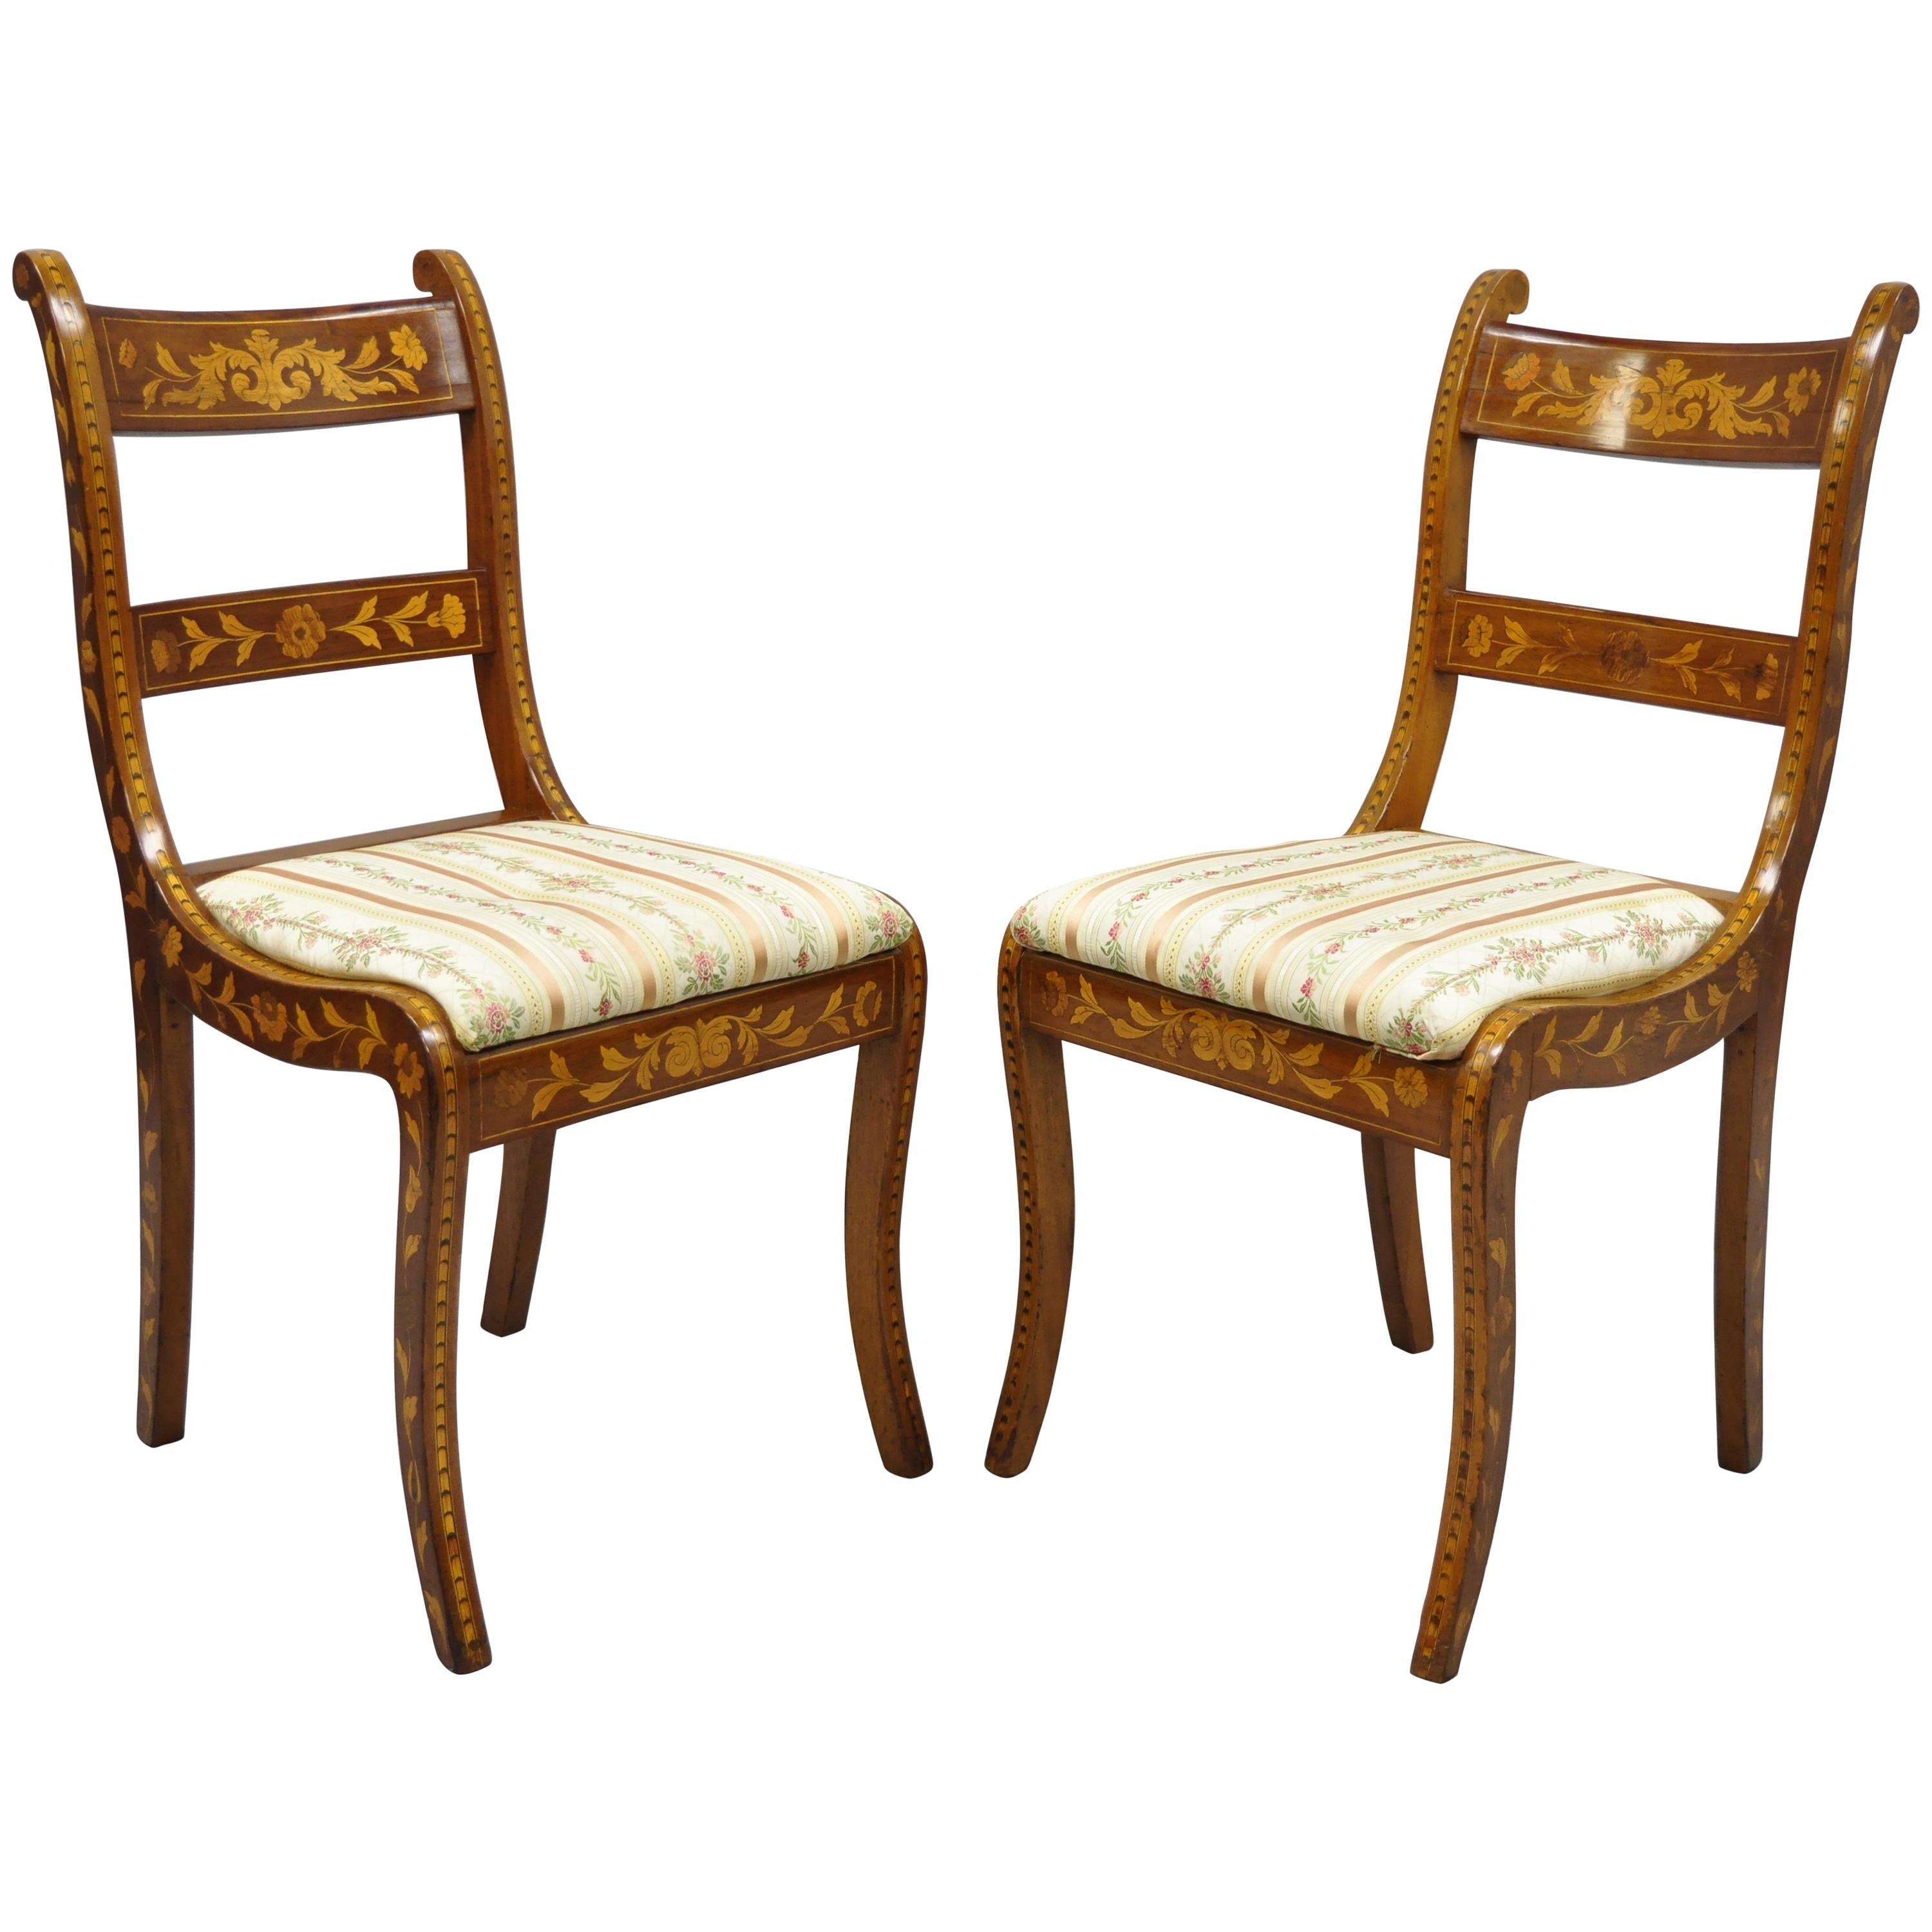 Paar Beistellstühle aus Seidenholz mit niederländischer Intarsienarbeit aus dem 19. Jahrhundert im Regency-Stil